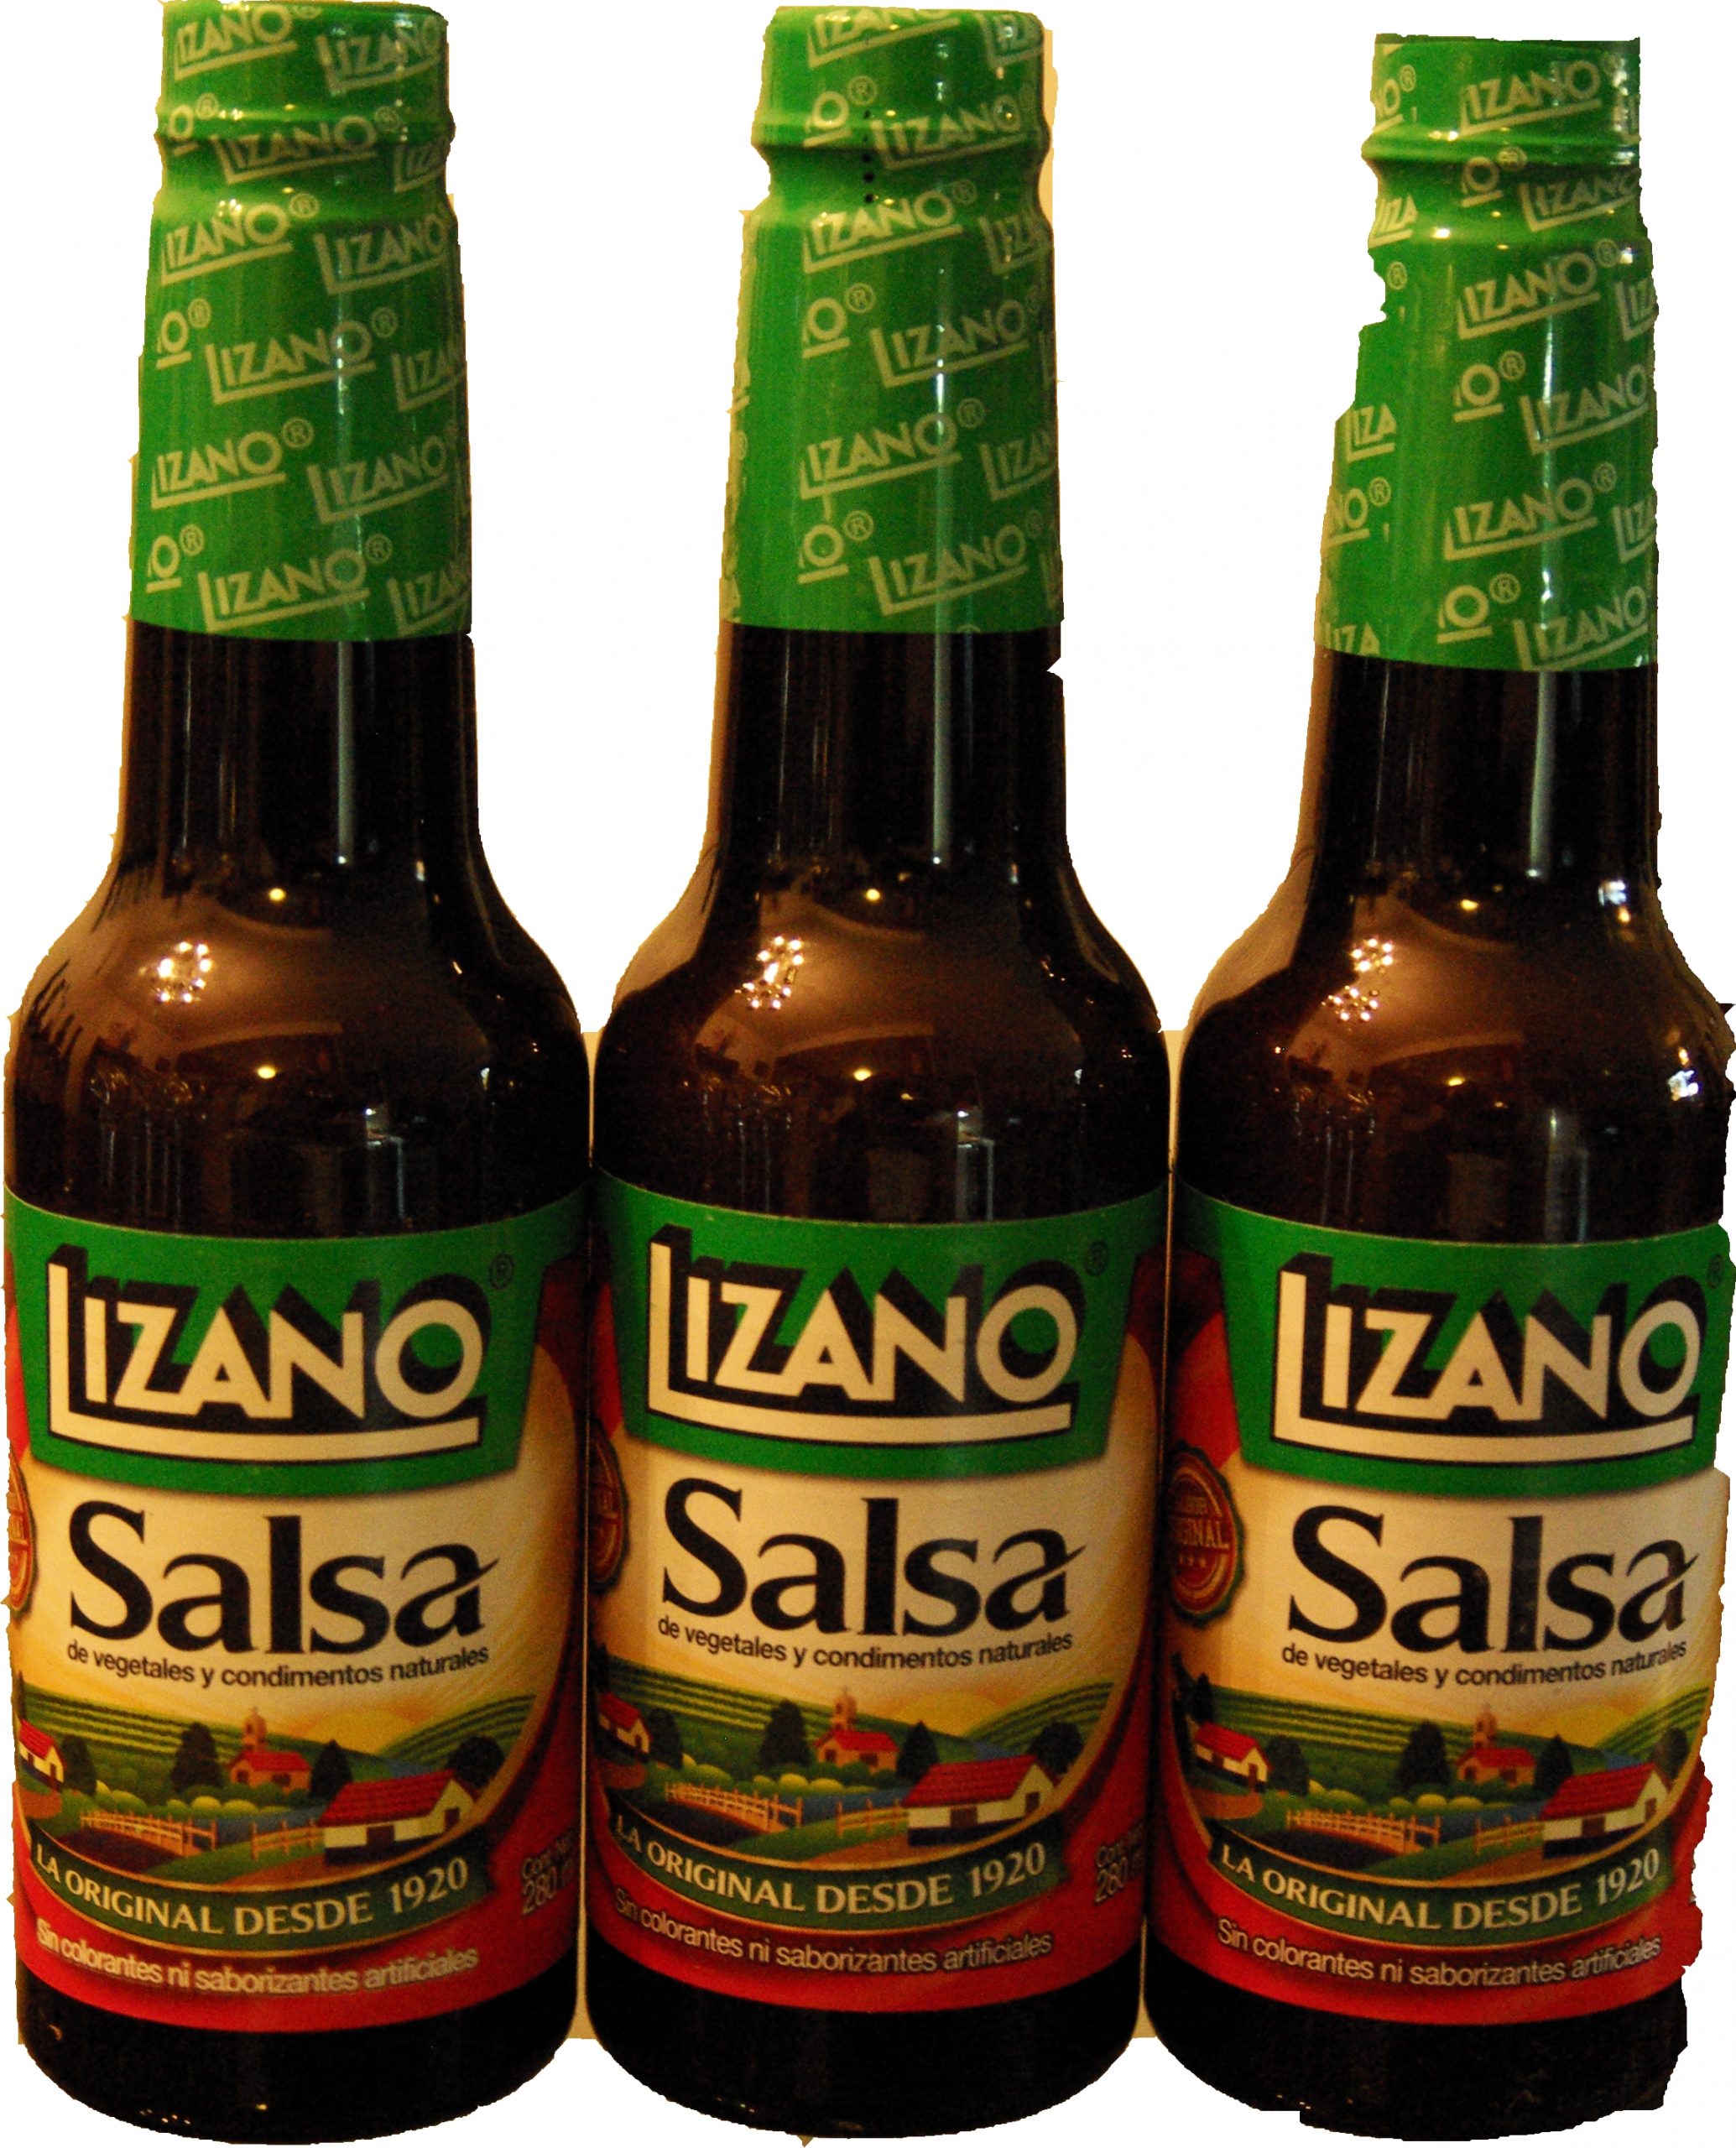 Lizano Salsa